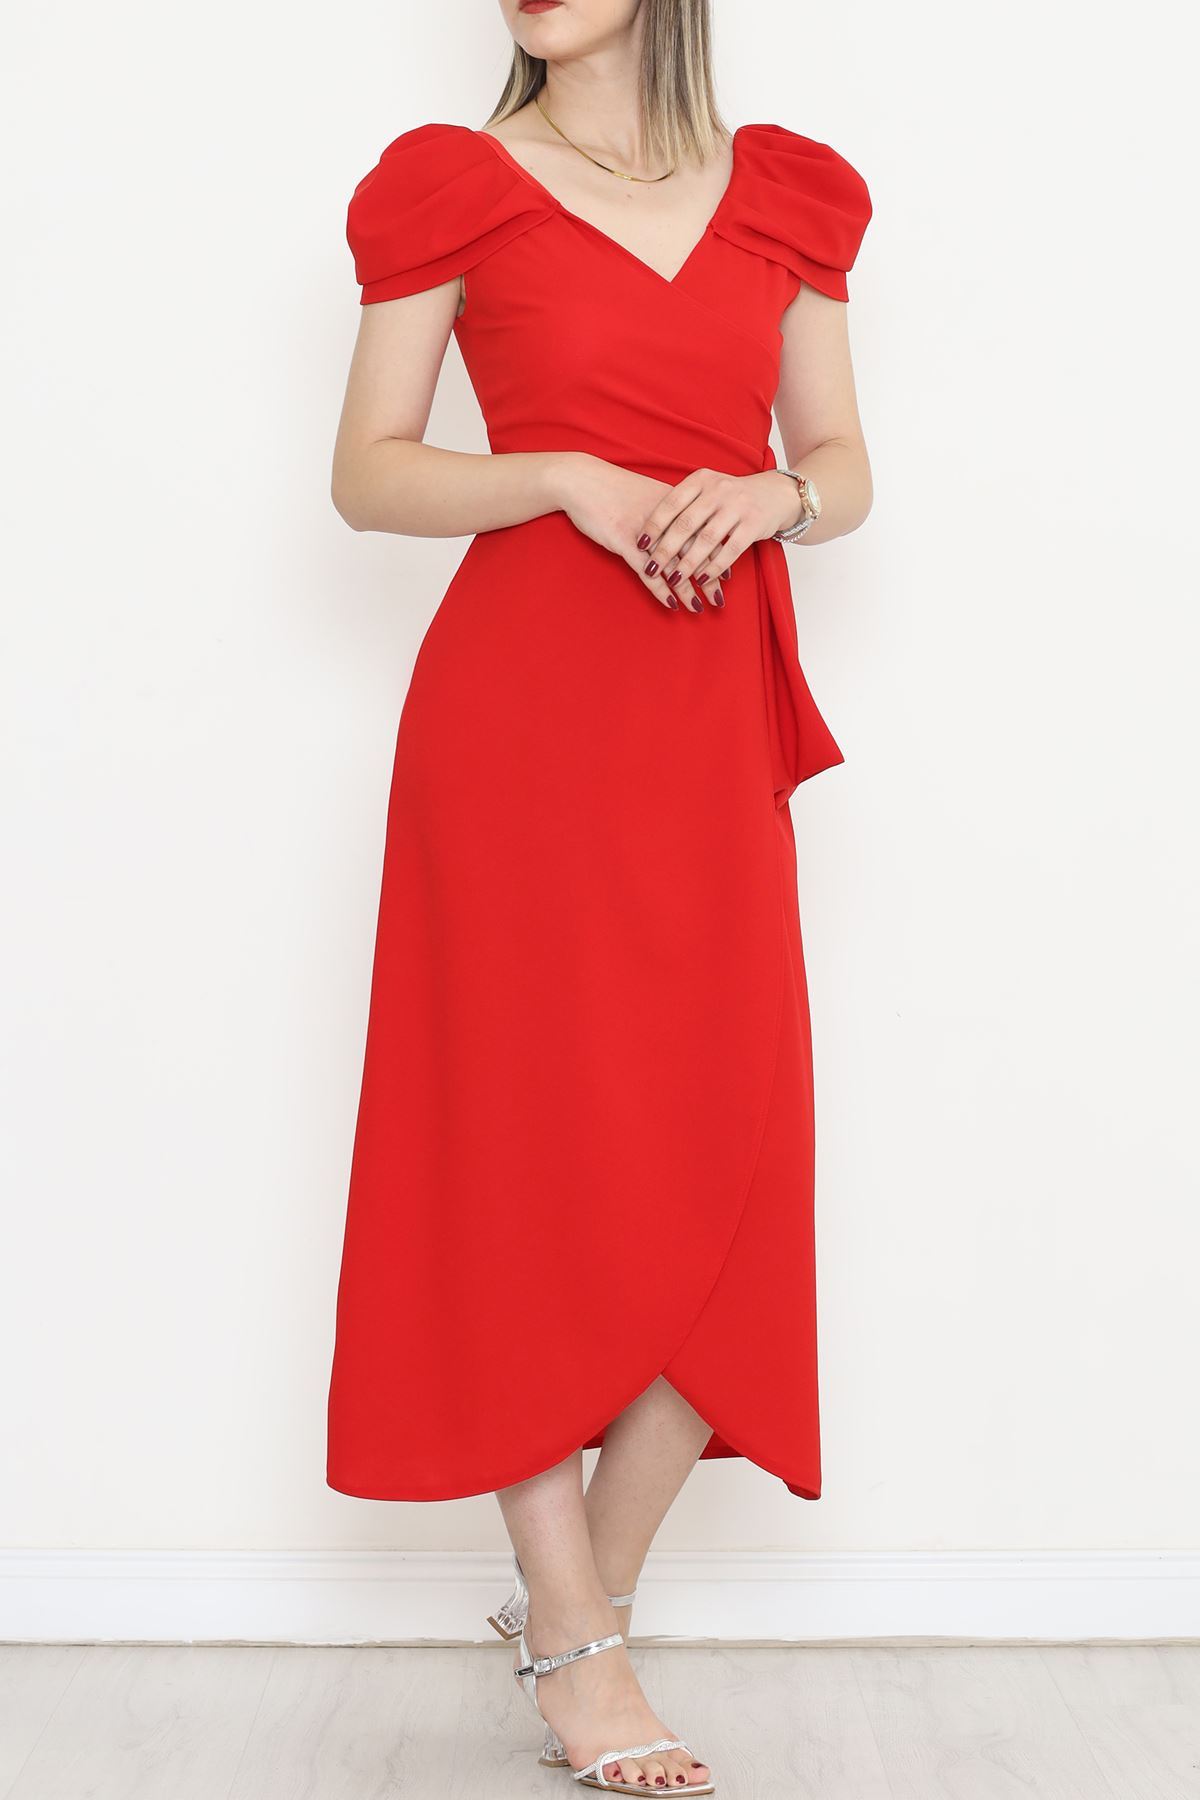 CLZ275 Omuz Pileli Krep Elbise Kırmızı